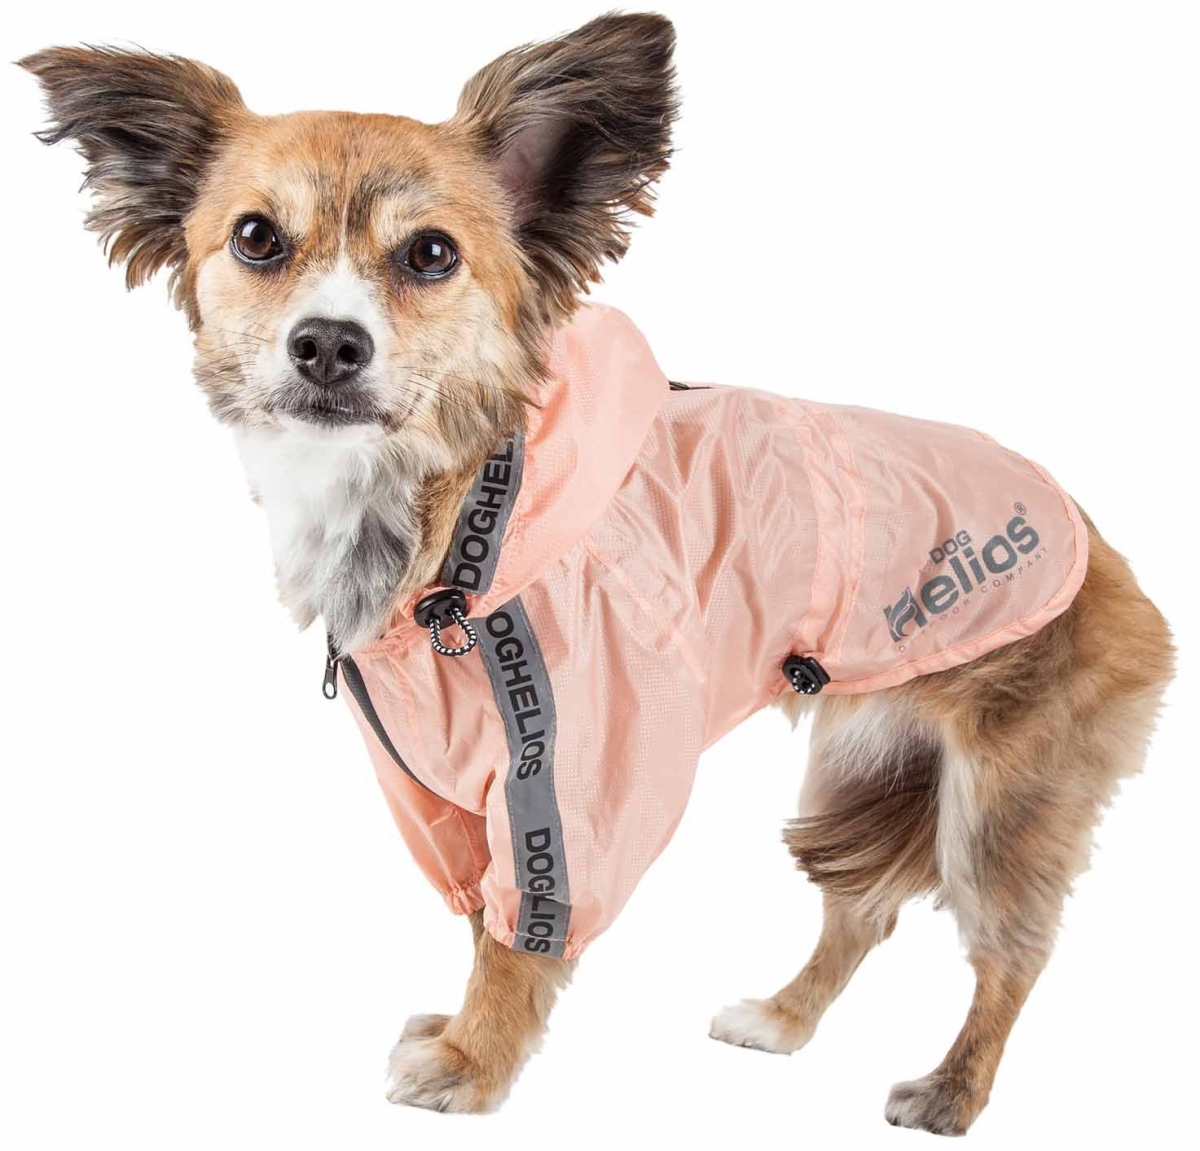 R9pcmd Torrential Shield Waterproof Multi-adjustable Pet Dog Windbreaker Raincoat - Peach, Medium